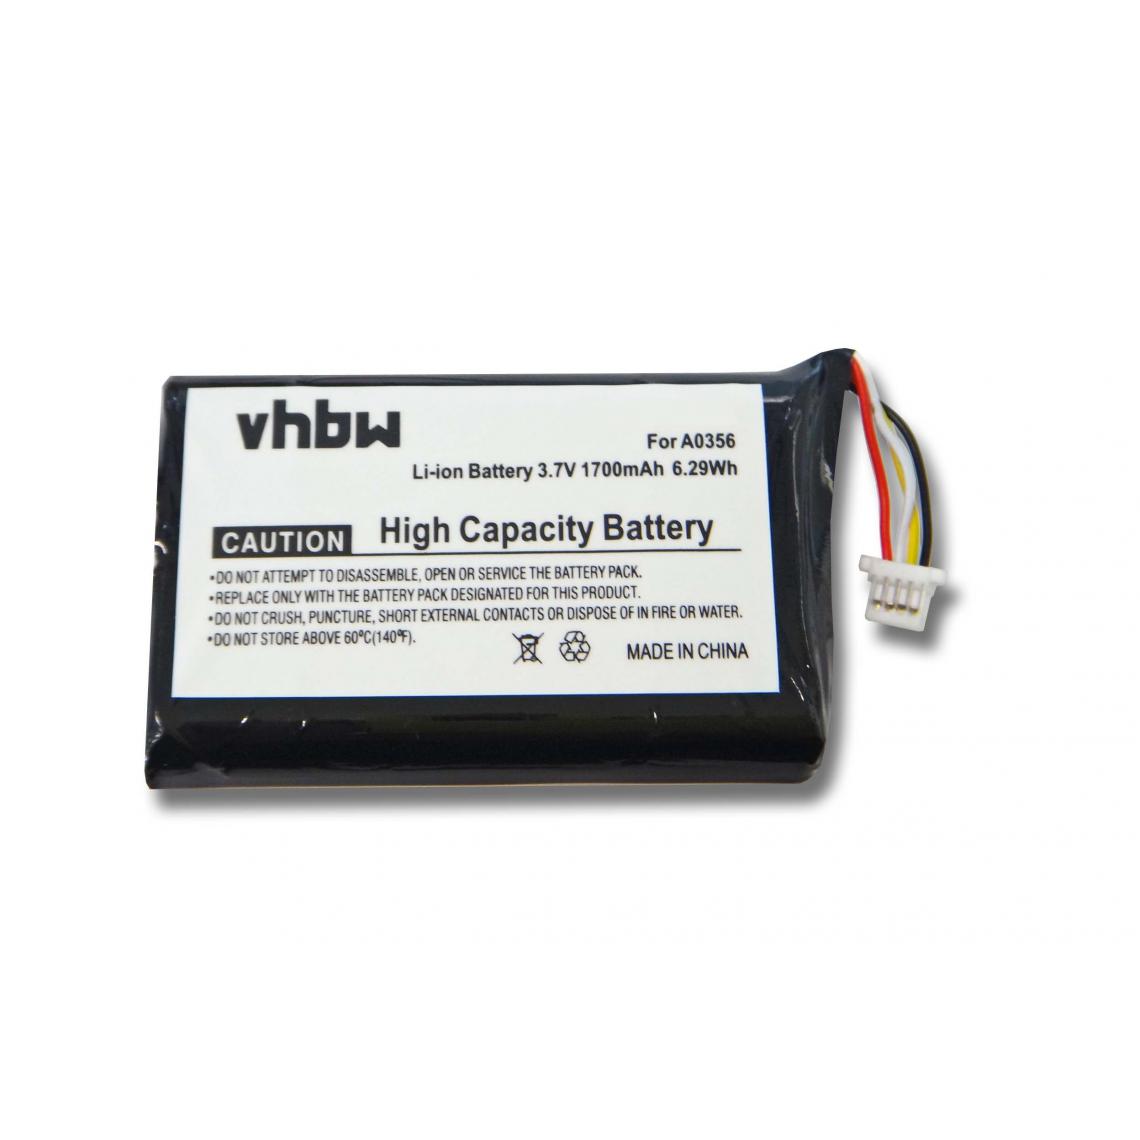 Vhbw - Batterie Li-Ion 1700mAh (3,7V) pour Nevo S70. Remplace la batterie: A0356. - Autre appareil de mesure